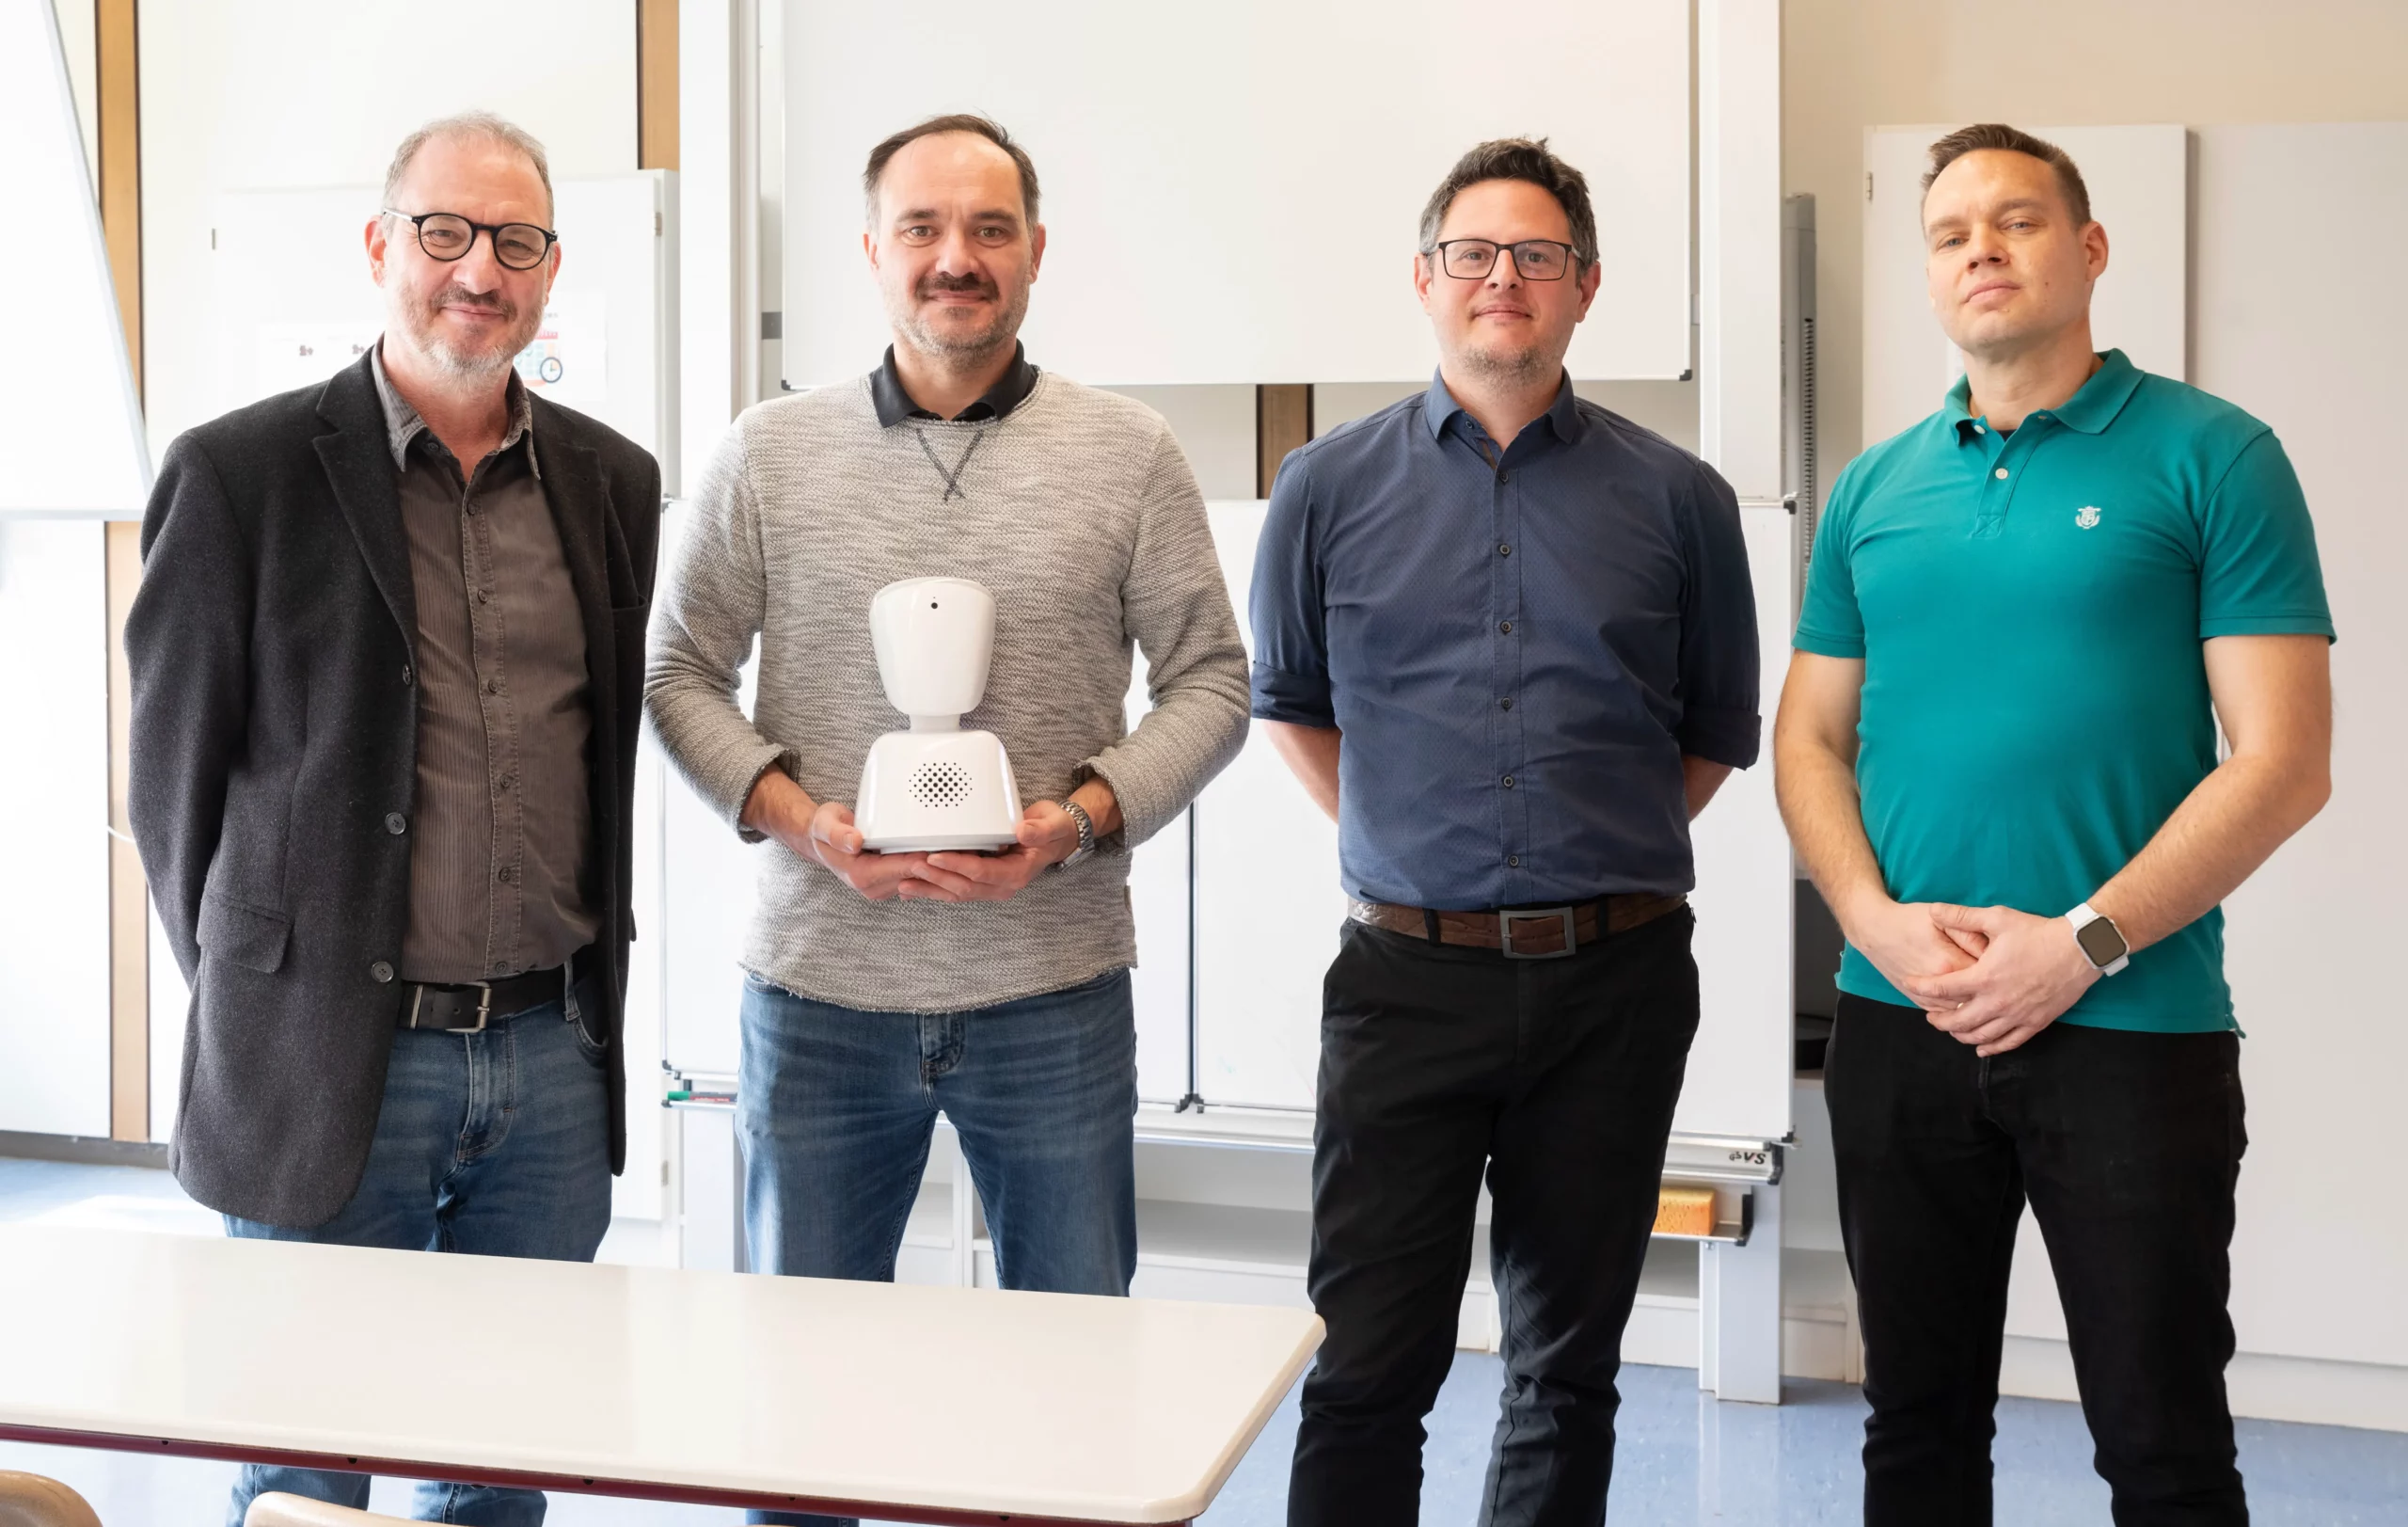 Robert Bittner, Peter Durst, Stefan Baust und Uwe Schäfer mit dem AV1 Avatar, der aktuell an der Merian Realschule seinen Einsatz findet.